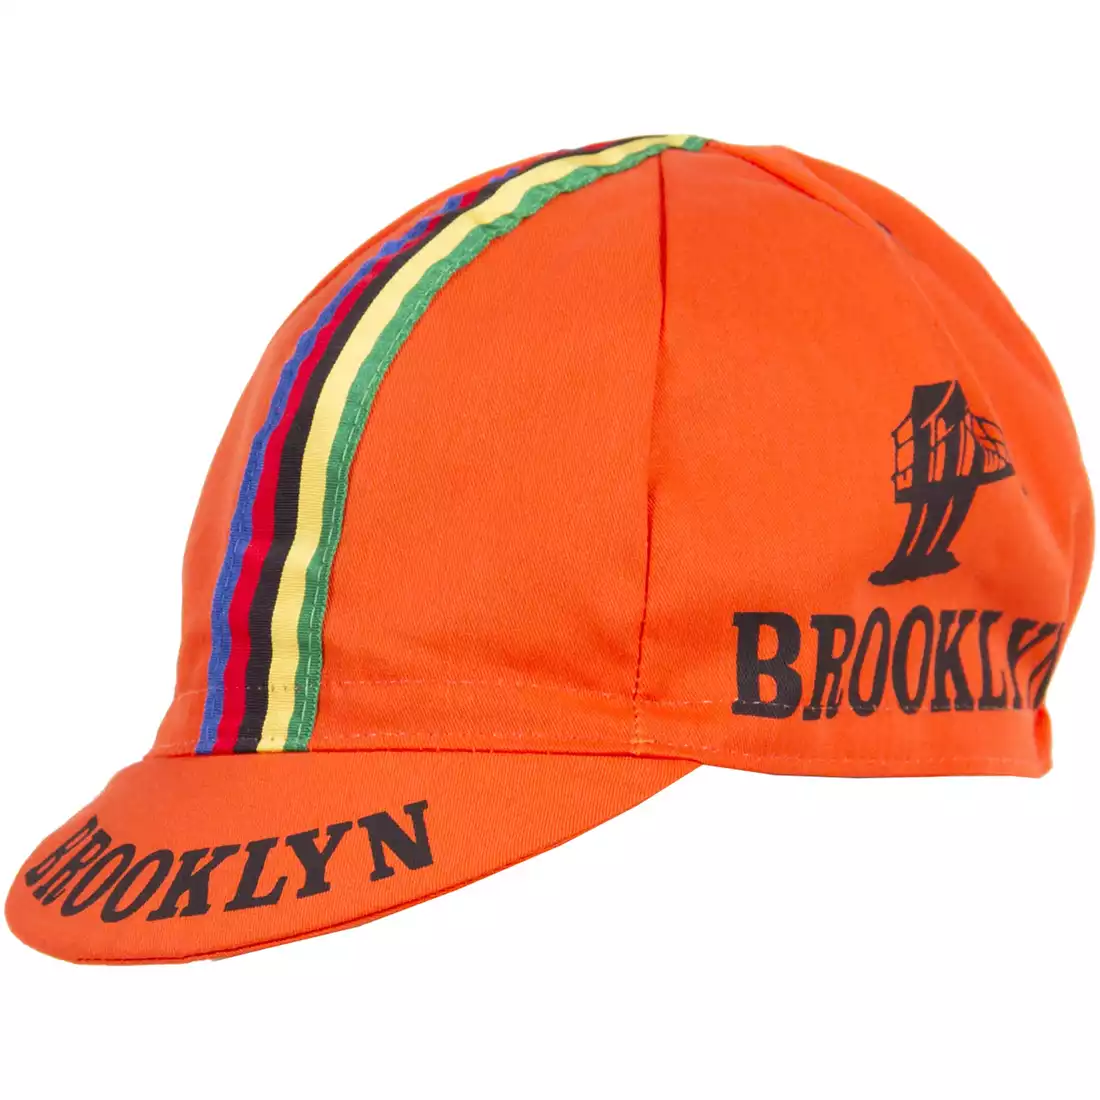 GIORDANA SS18 czapeczka kolarska - Brooklyn -  Orange w/ Stripe tape  GI-S6-COCA-BROK-ORAN one size